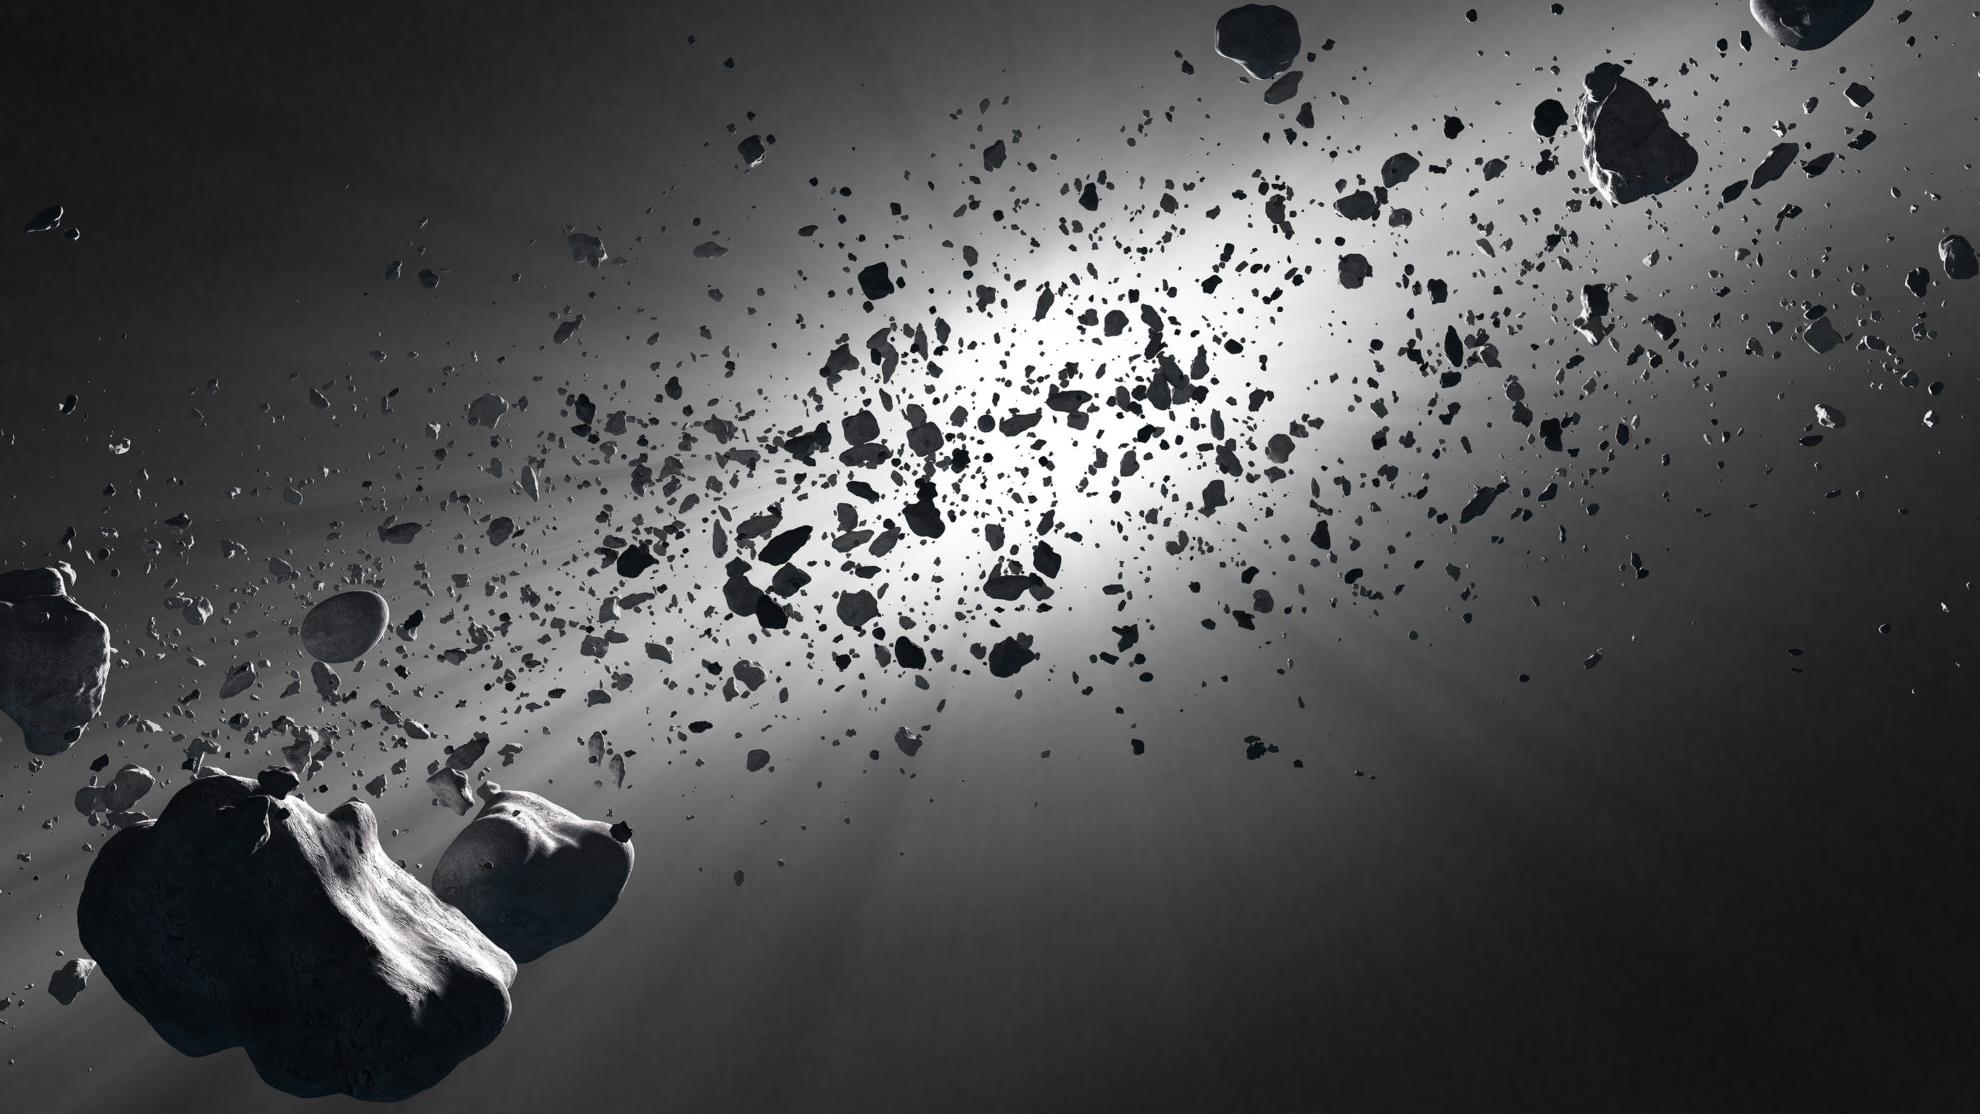 Des solutions pour contrer les risques d'astéroïdes
Des solutions pour contrer les risques d'astéroïdes